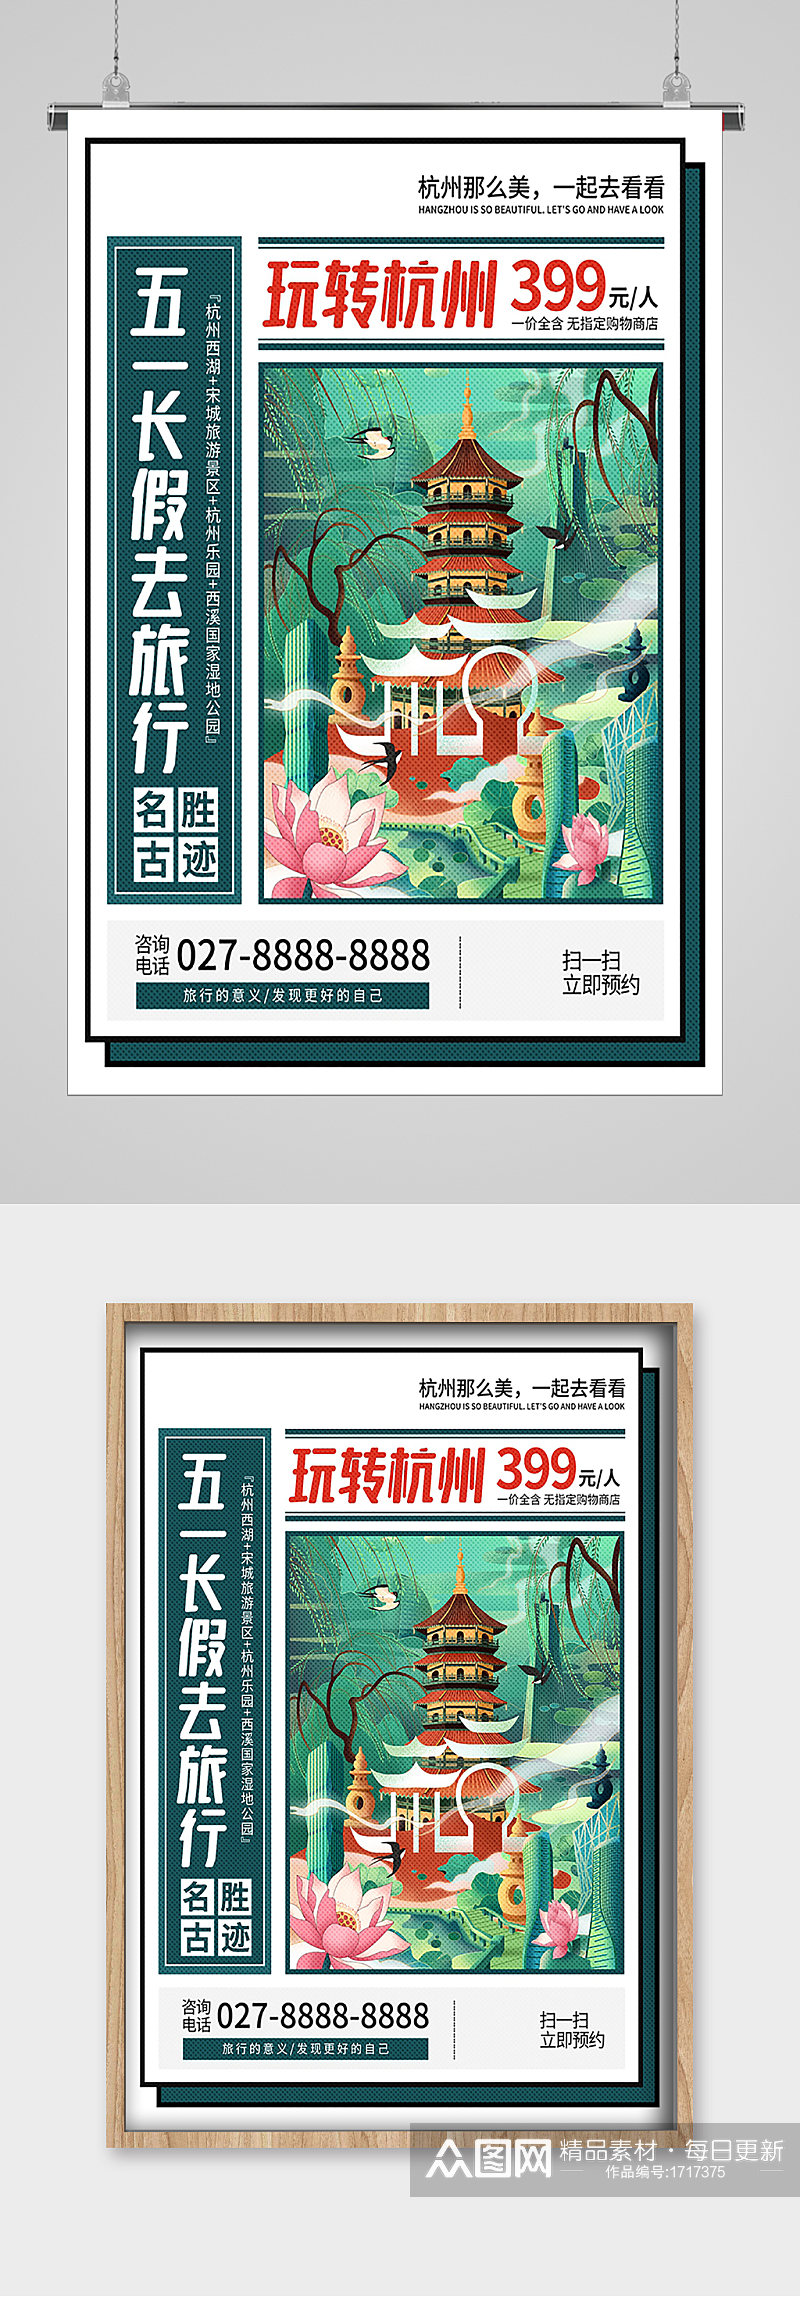 五一劳动节出游去杭州宣传海报素材